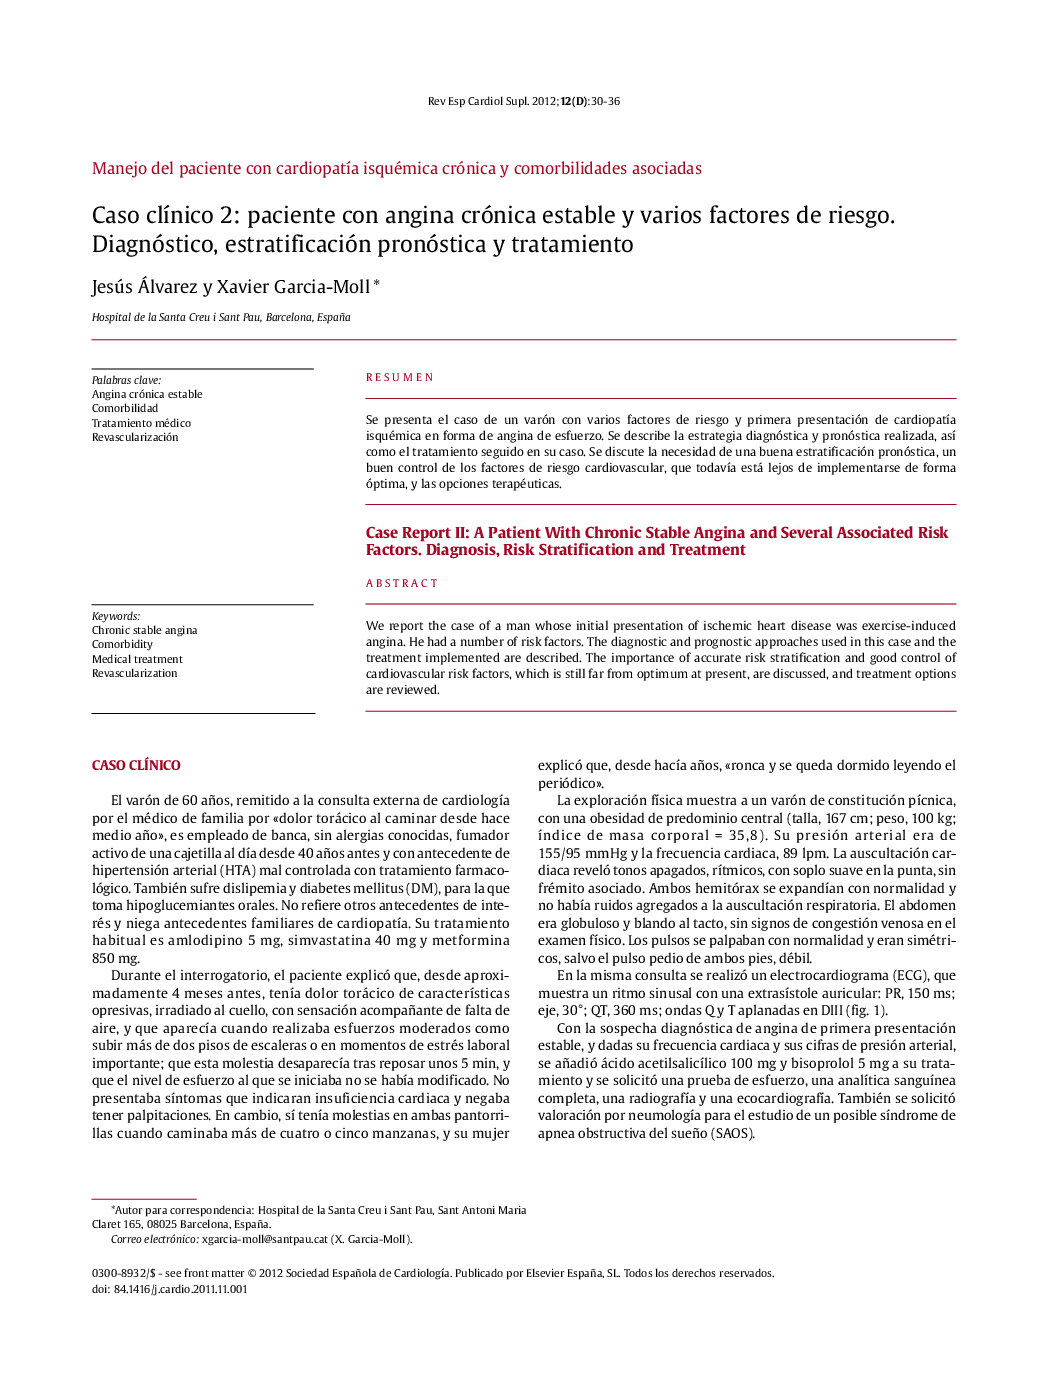 Caso clÃ­nico 2: paciente con angina crónica estable y varios factores de riesgo. Diagnóstico, estratificación pronóstica y tratamiento